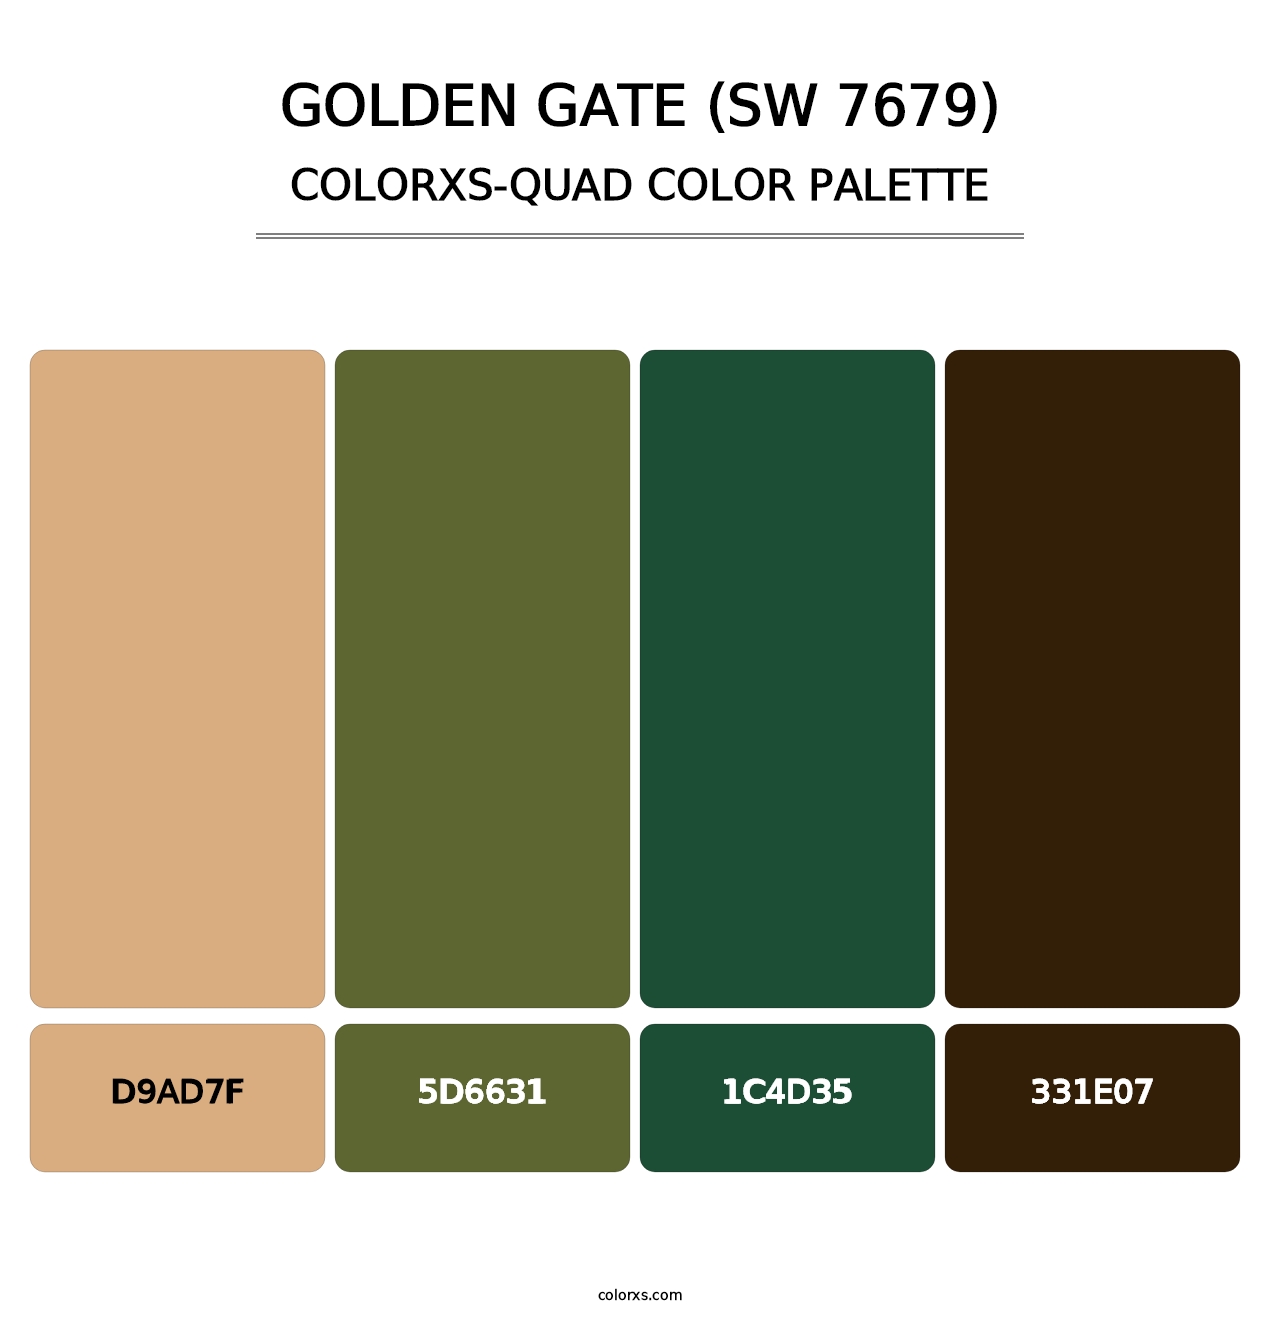 Golden Gate (SW 7679) - Colorxs Quad Palette